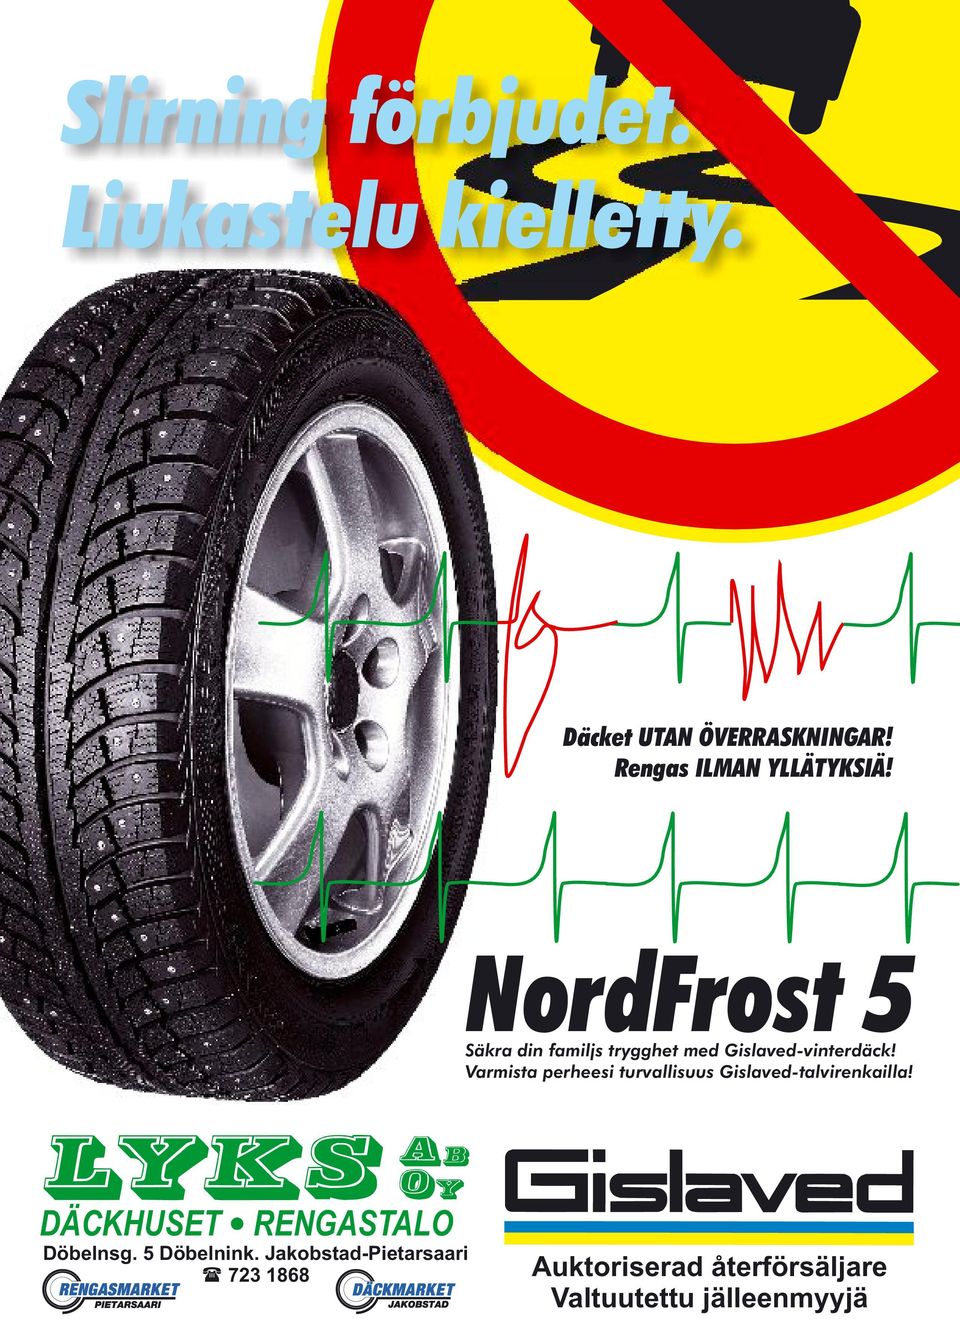 NordFrost 5 Säkra din familjs trygghet med Gislaved-vinterdäck!